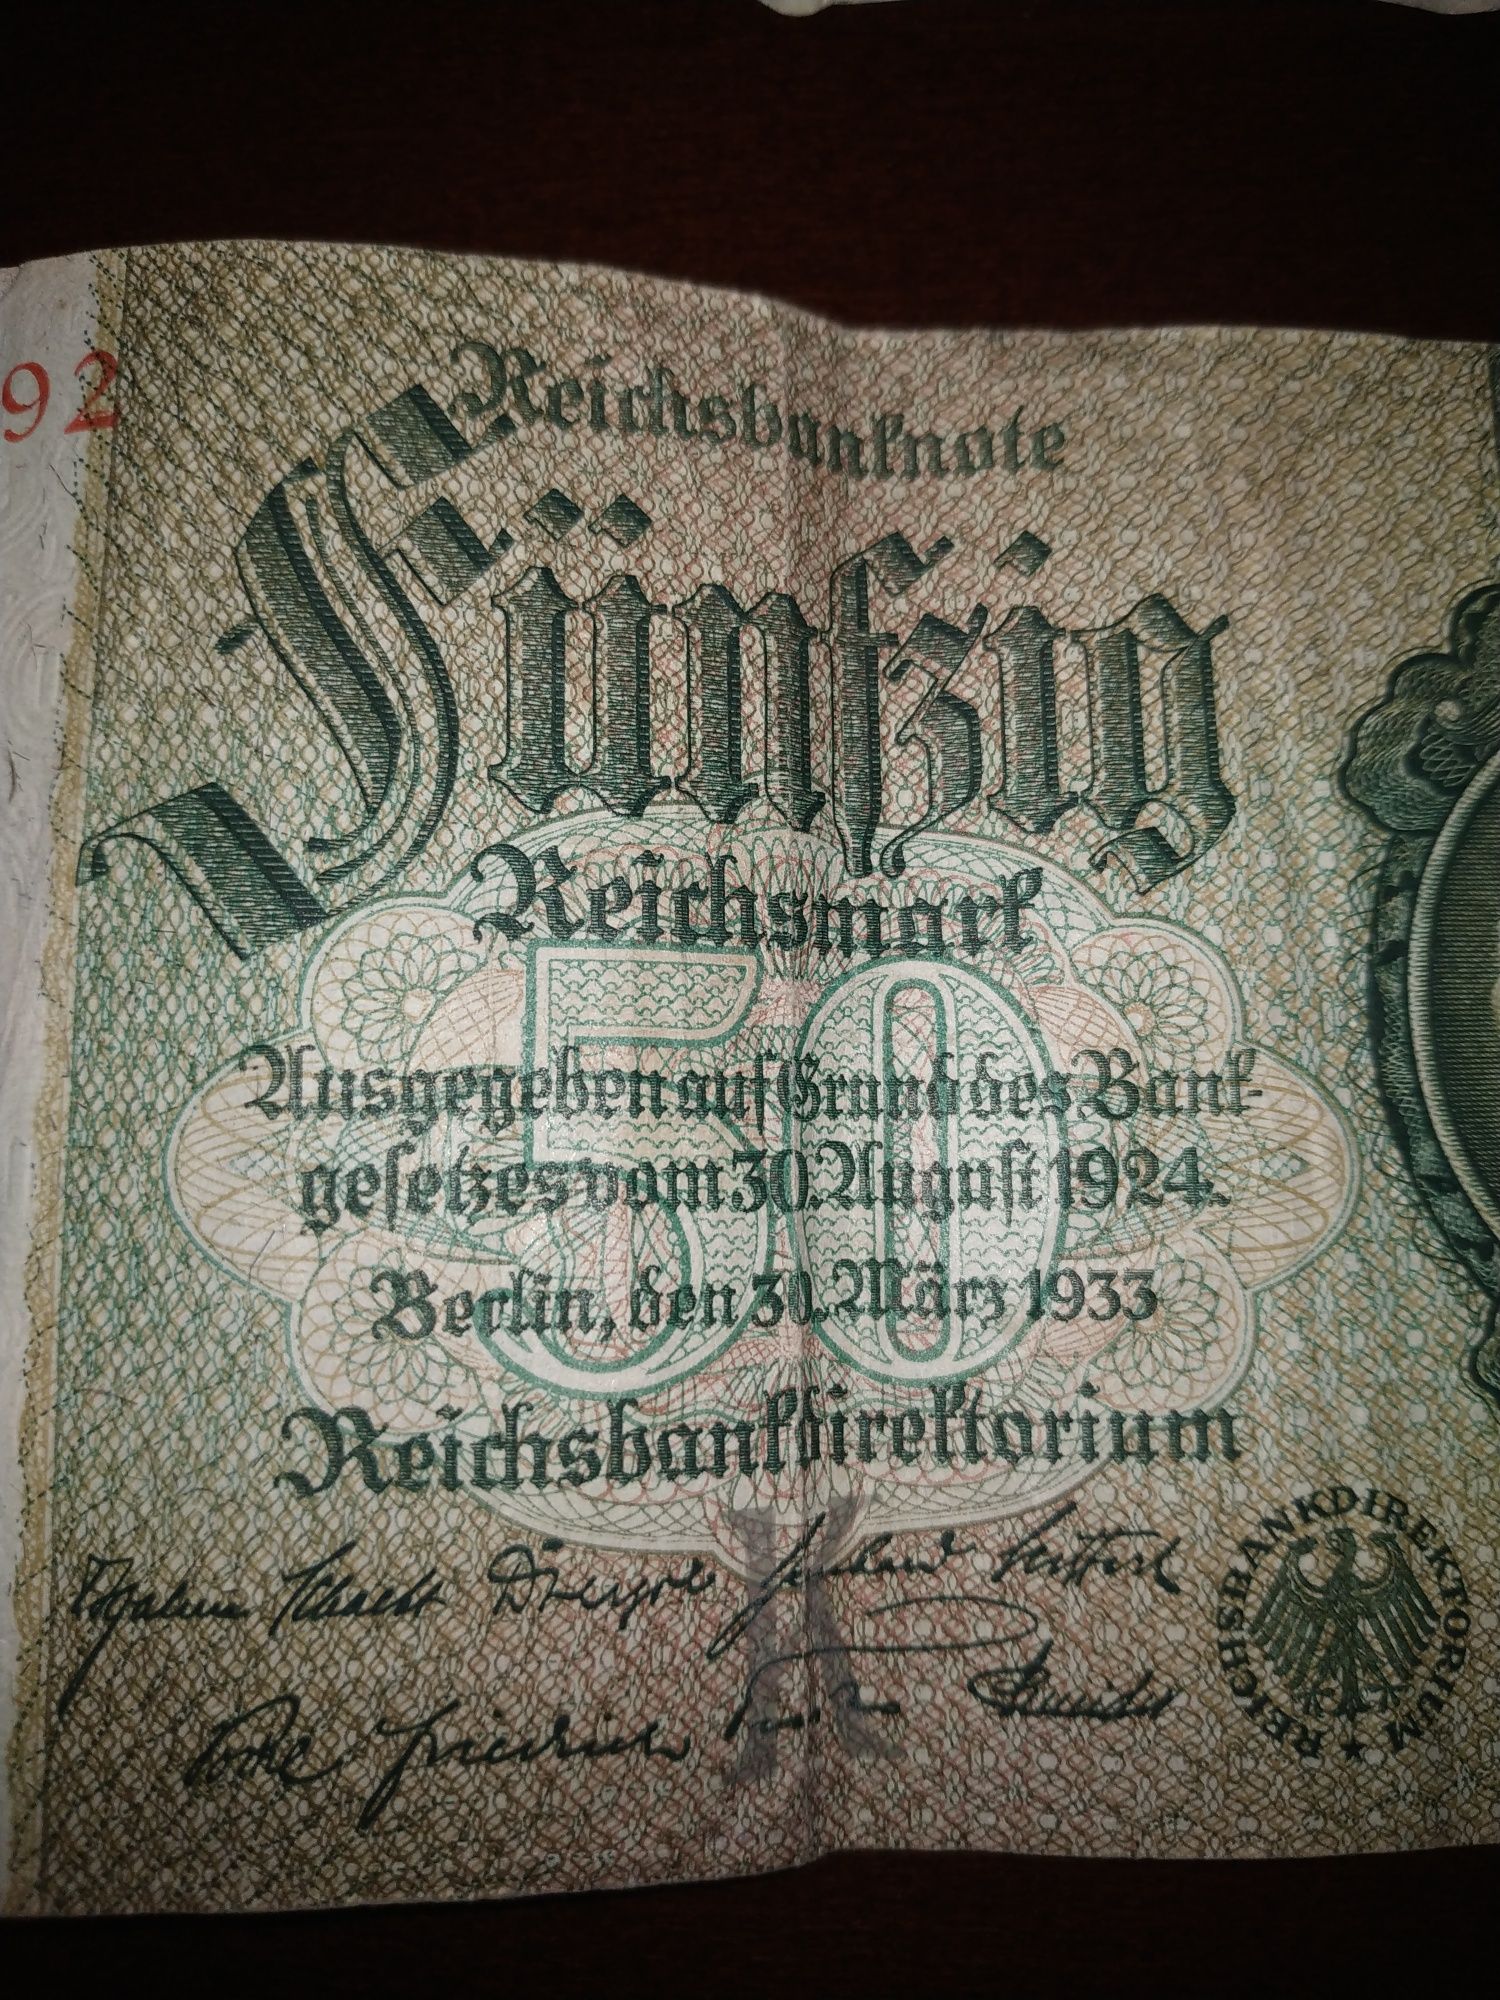 Dwa przedwojenne banknoty niemieckie